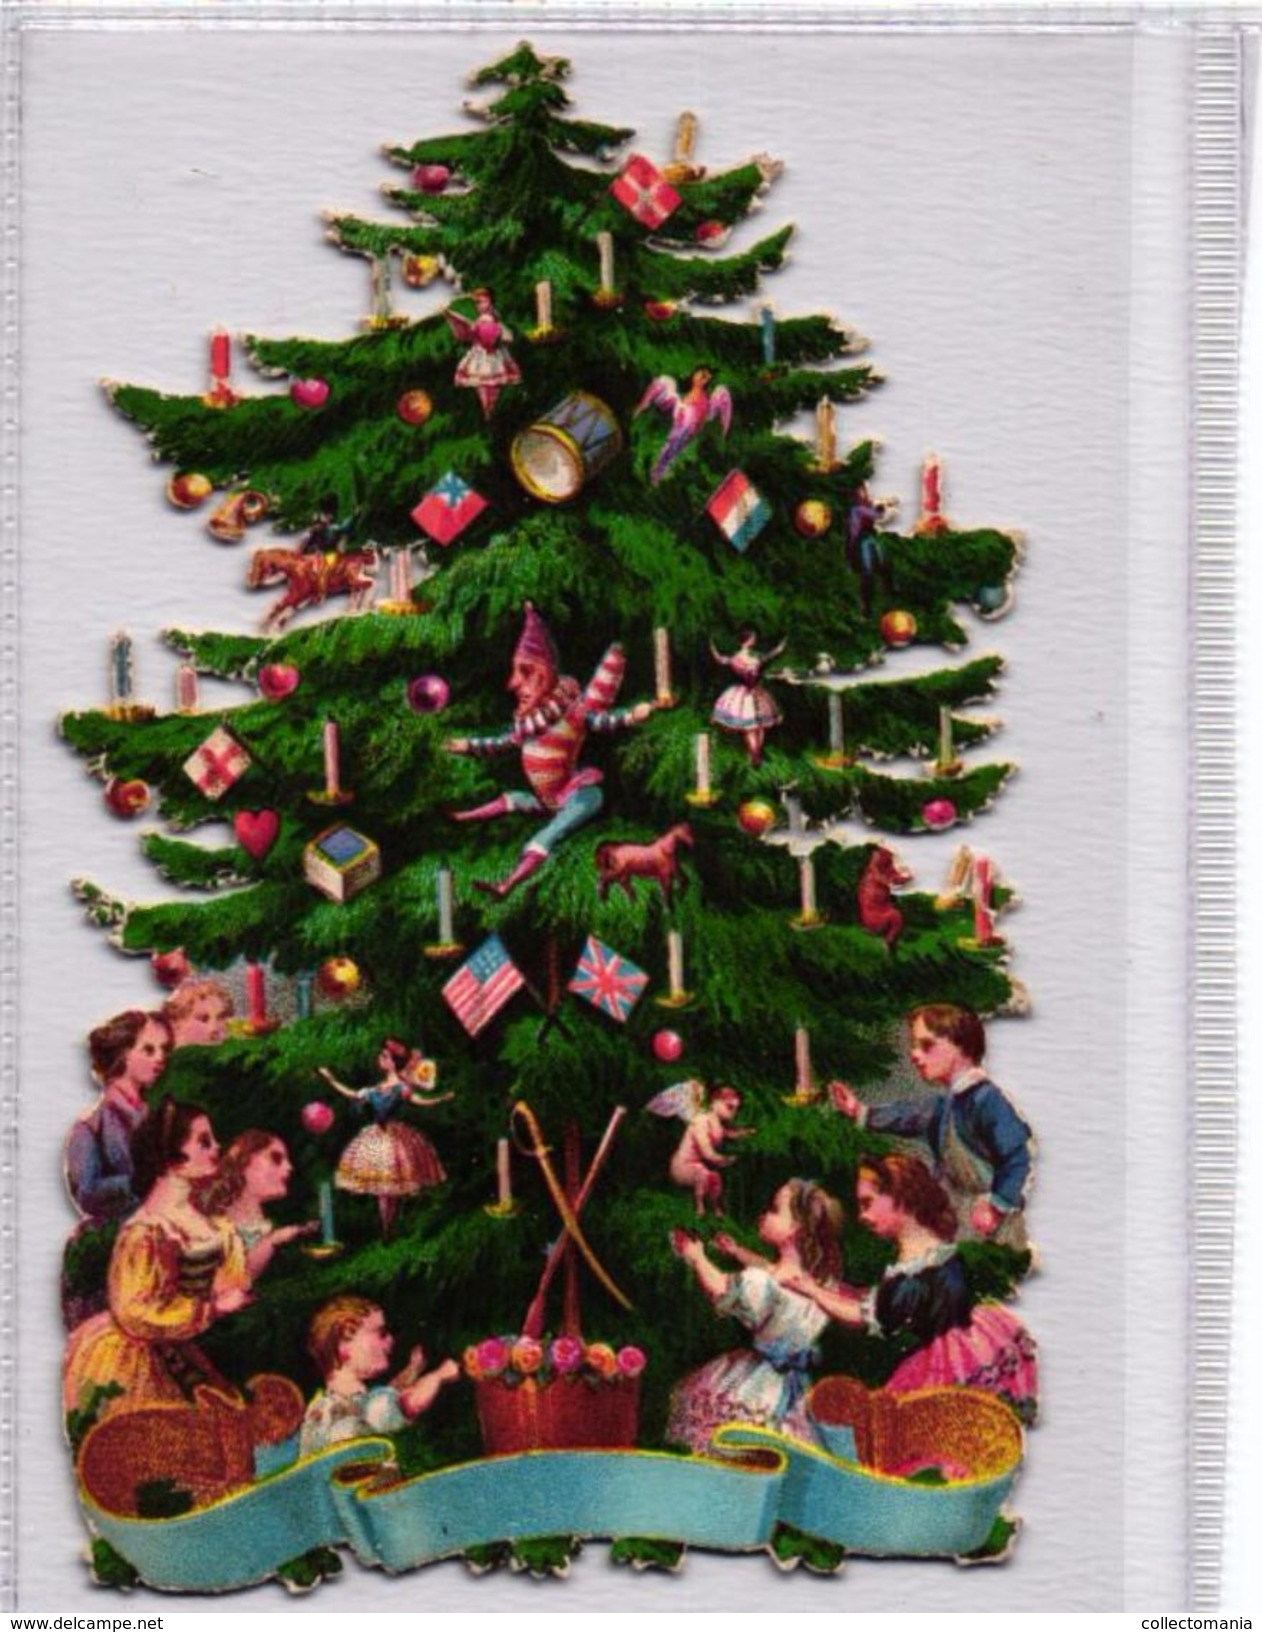 Circa 1880 Weinacht Scraps VG Christmas Kerst 10X6,5cm, 2 PERES NOEL 8X13cm, 2 Balloons 5,5X9cm DIE CUT, SANTA CLAUS - Motiv 'Weihnachten'